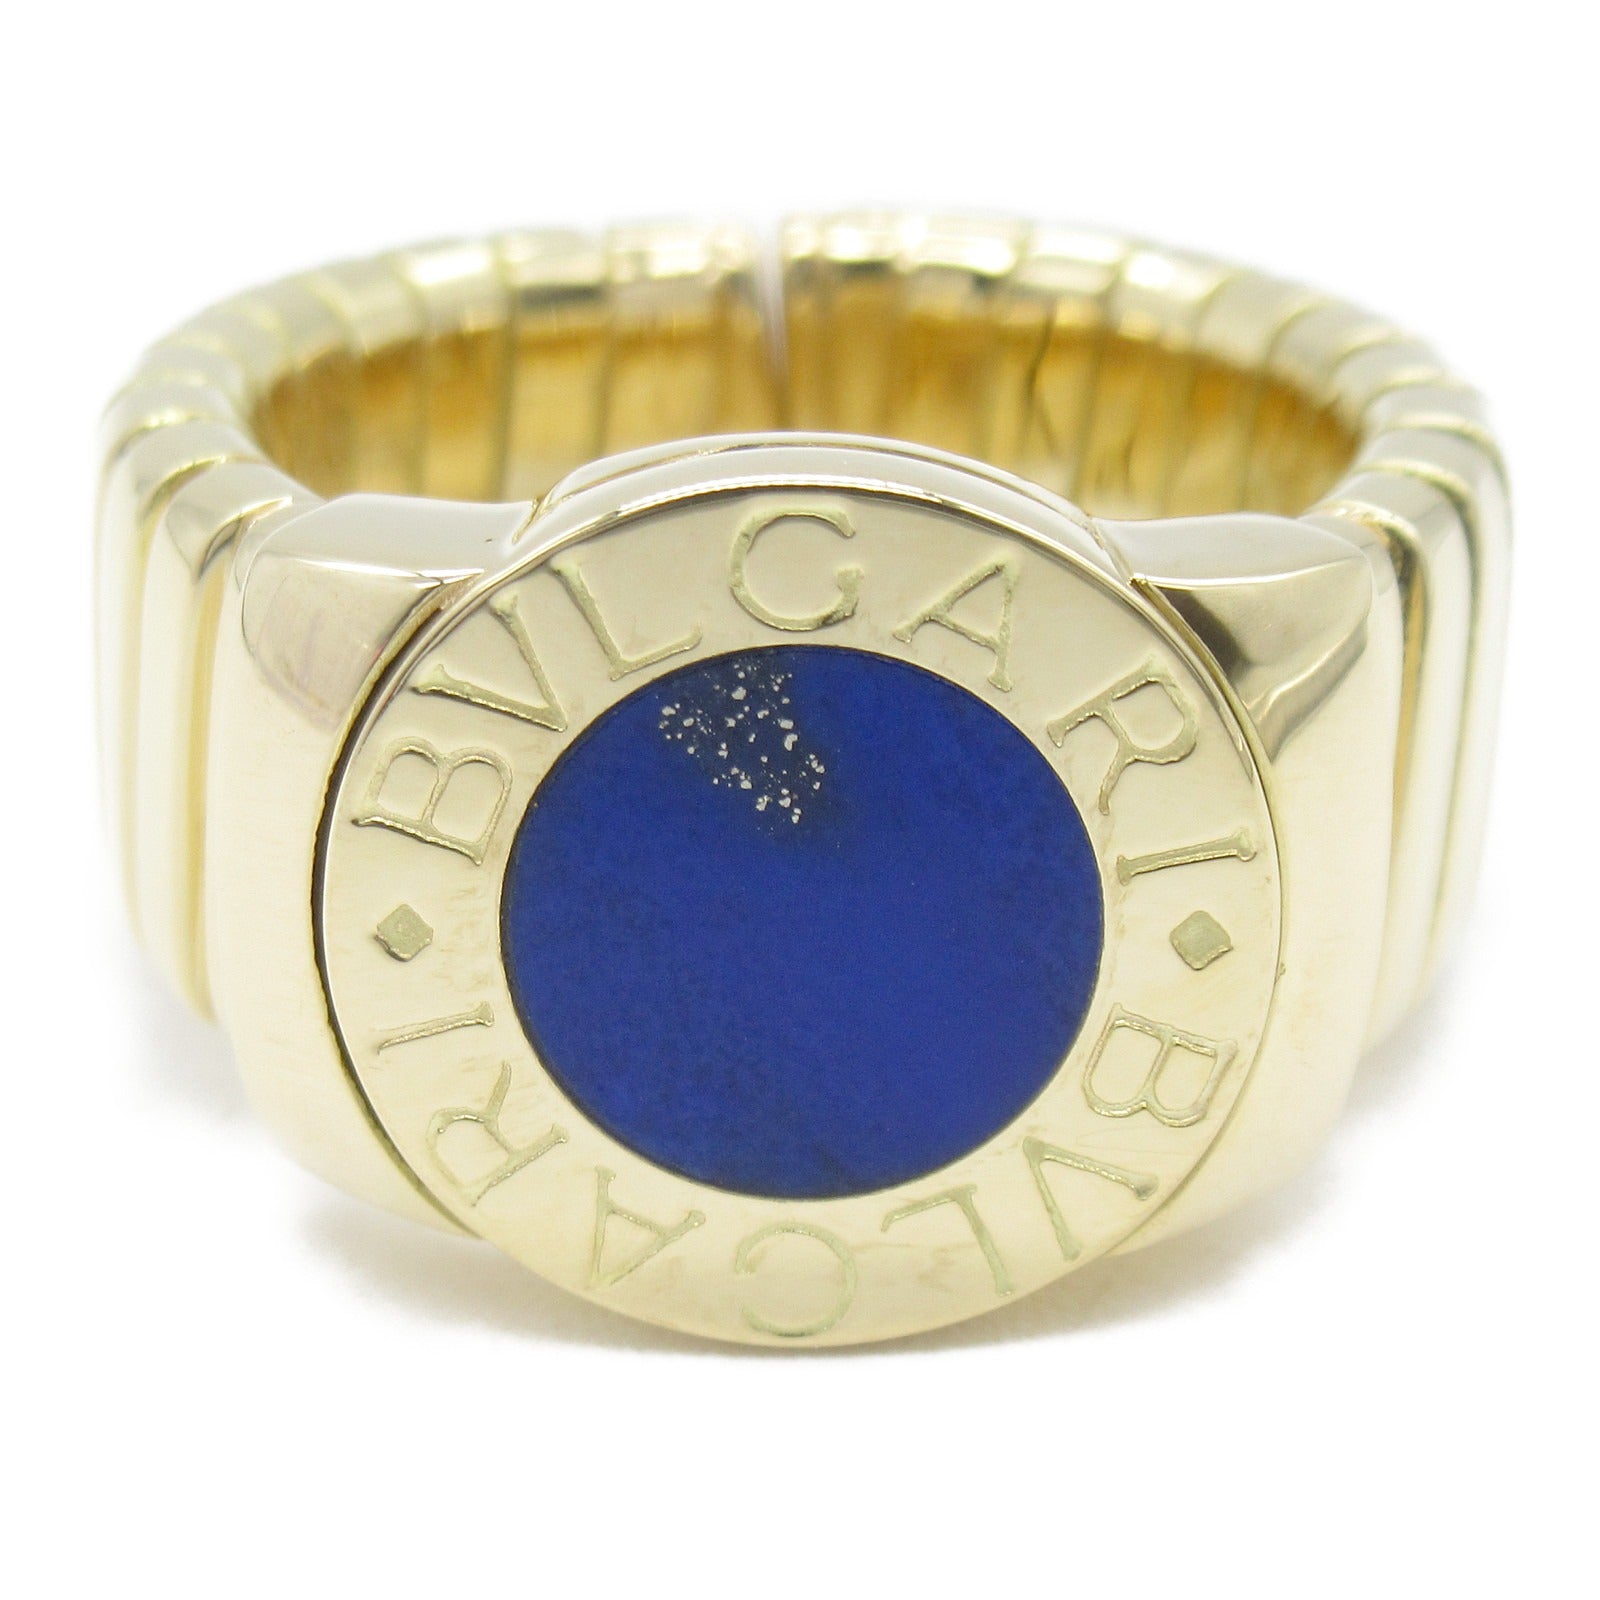 Bulgari BVLGARI Tubogas Rapislasli Ring Ring Ring Jewelry K18 (Yellow G) Rapislasli   Blue